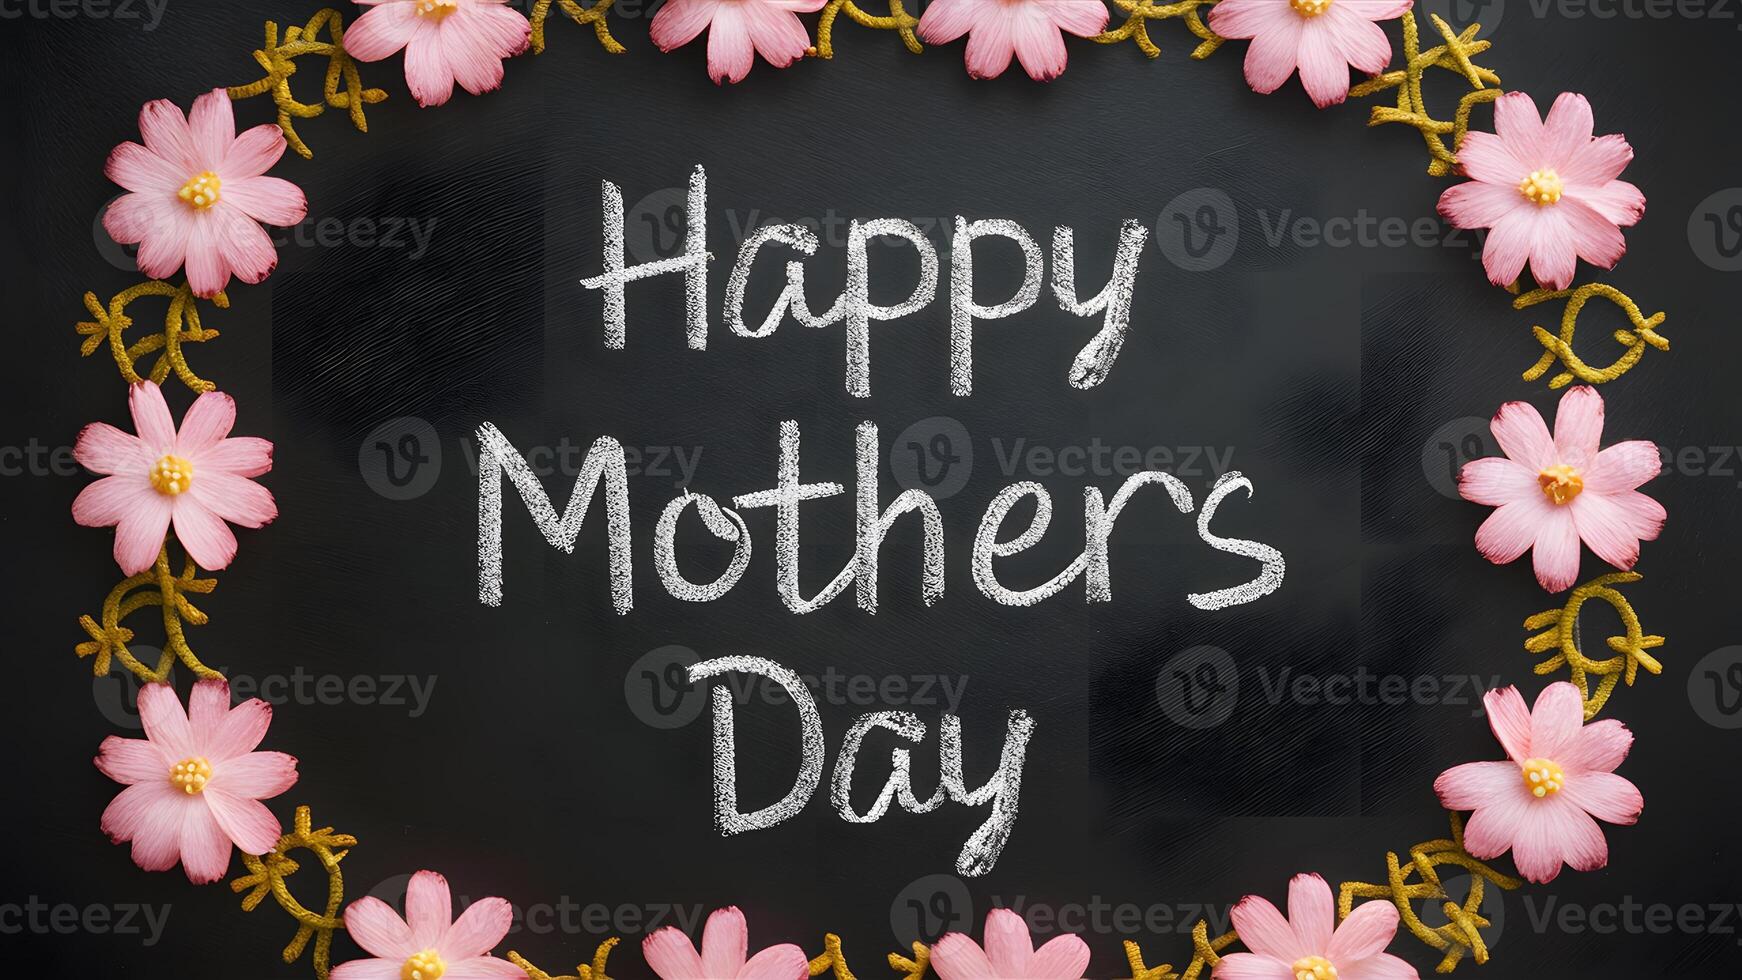 ai gerado giz escrito quadro-negro para feliz mães dia, Rosa flores texturizado foto